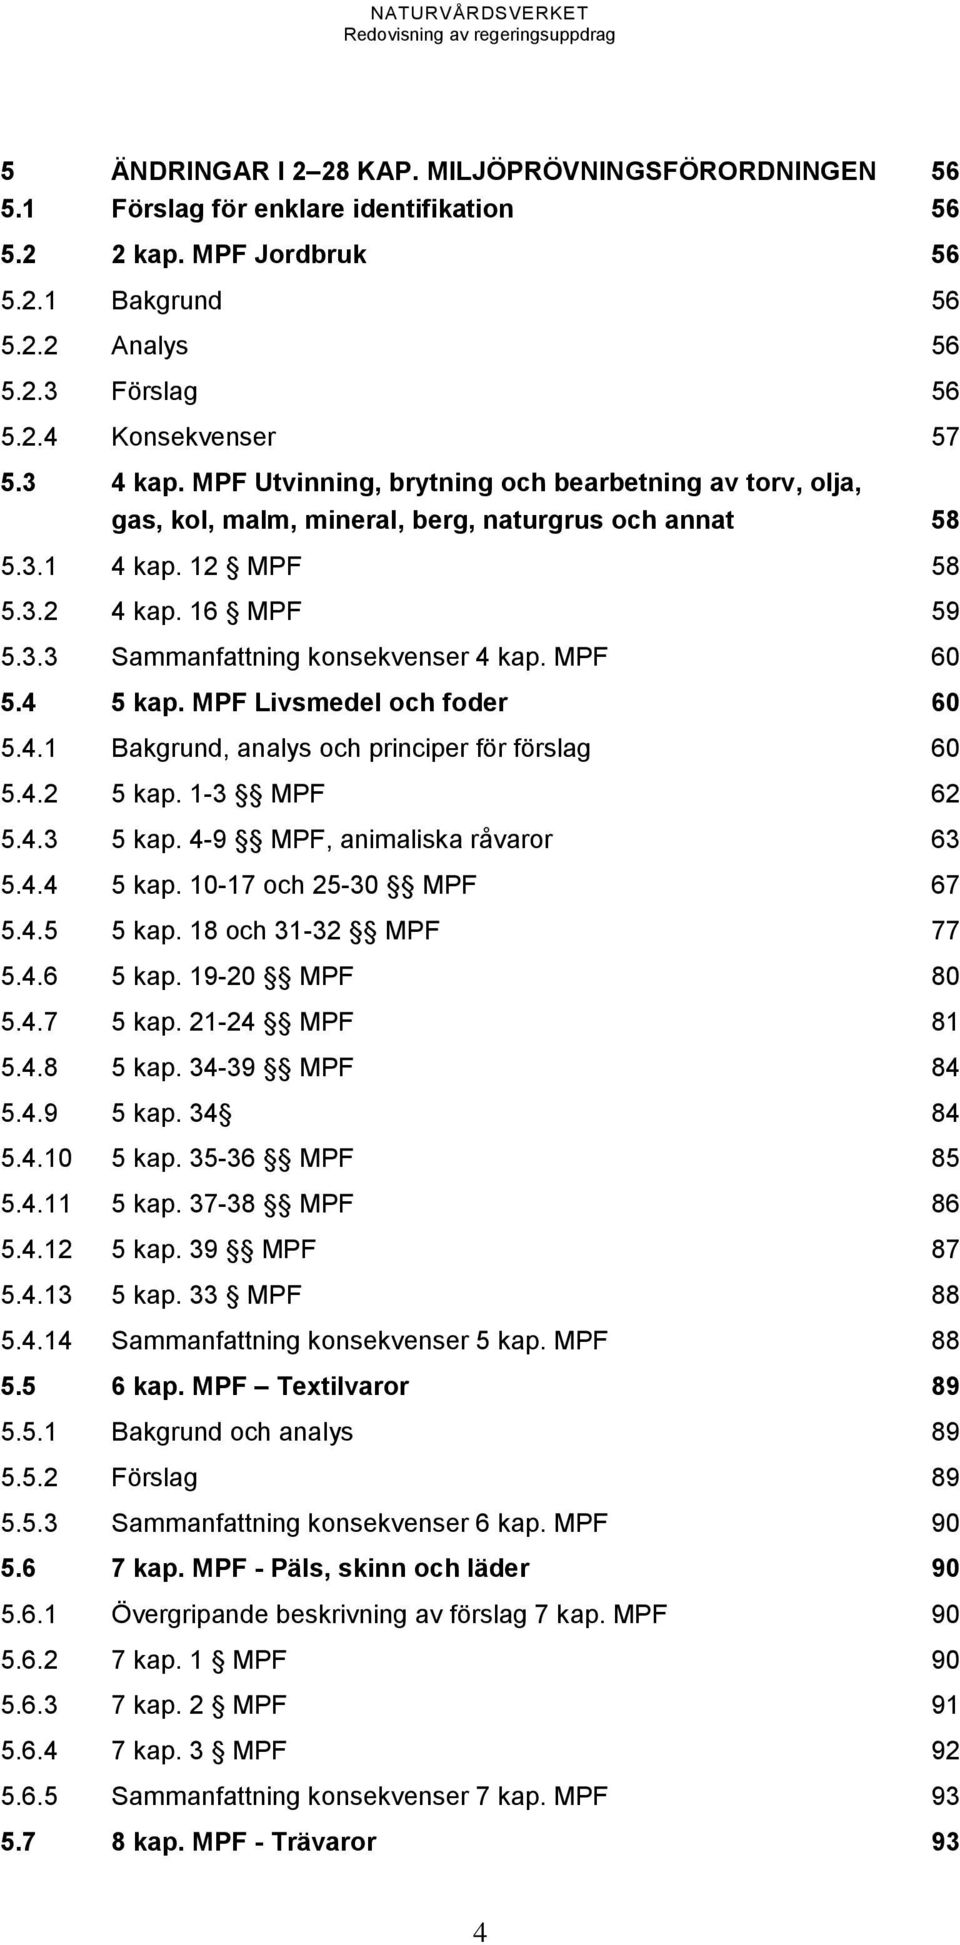 MPF 60 5.4 5 kap. MPF Livsmedel och foder 60 5.4.1 Bakgrund, analys och principer för förslag 60 5.4.2 5 kap. 1-3 MPF 62 5.4.3 5 kap. 4-9 MPF, animaliska råvaror 63 5.4.4 5 kap. 10-17 och 25-30 MPF 67 5.